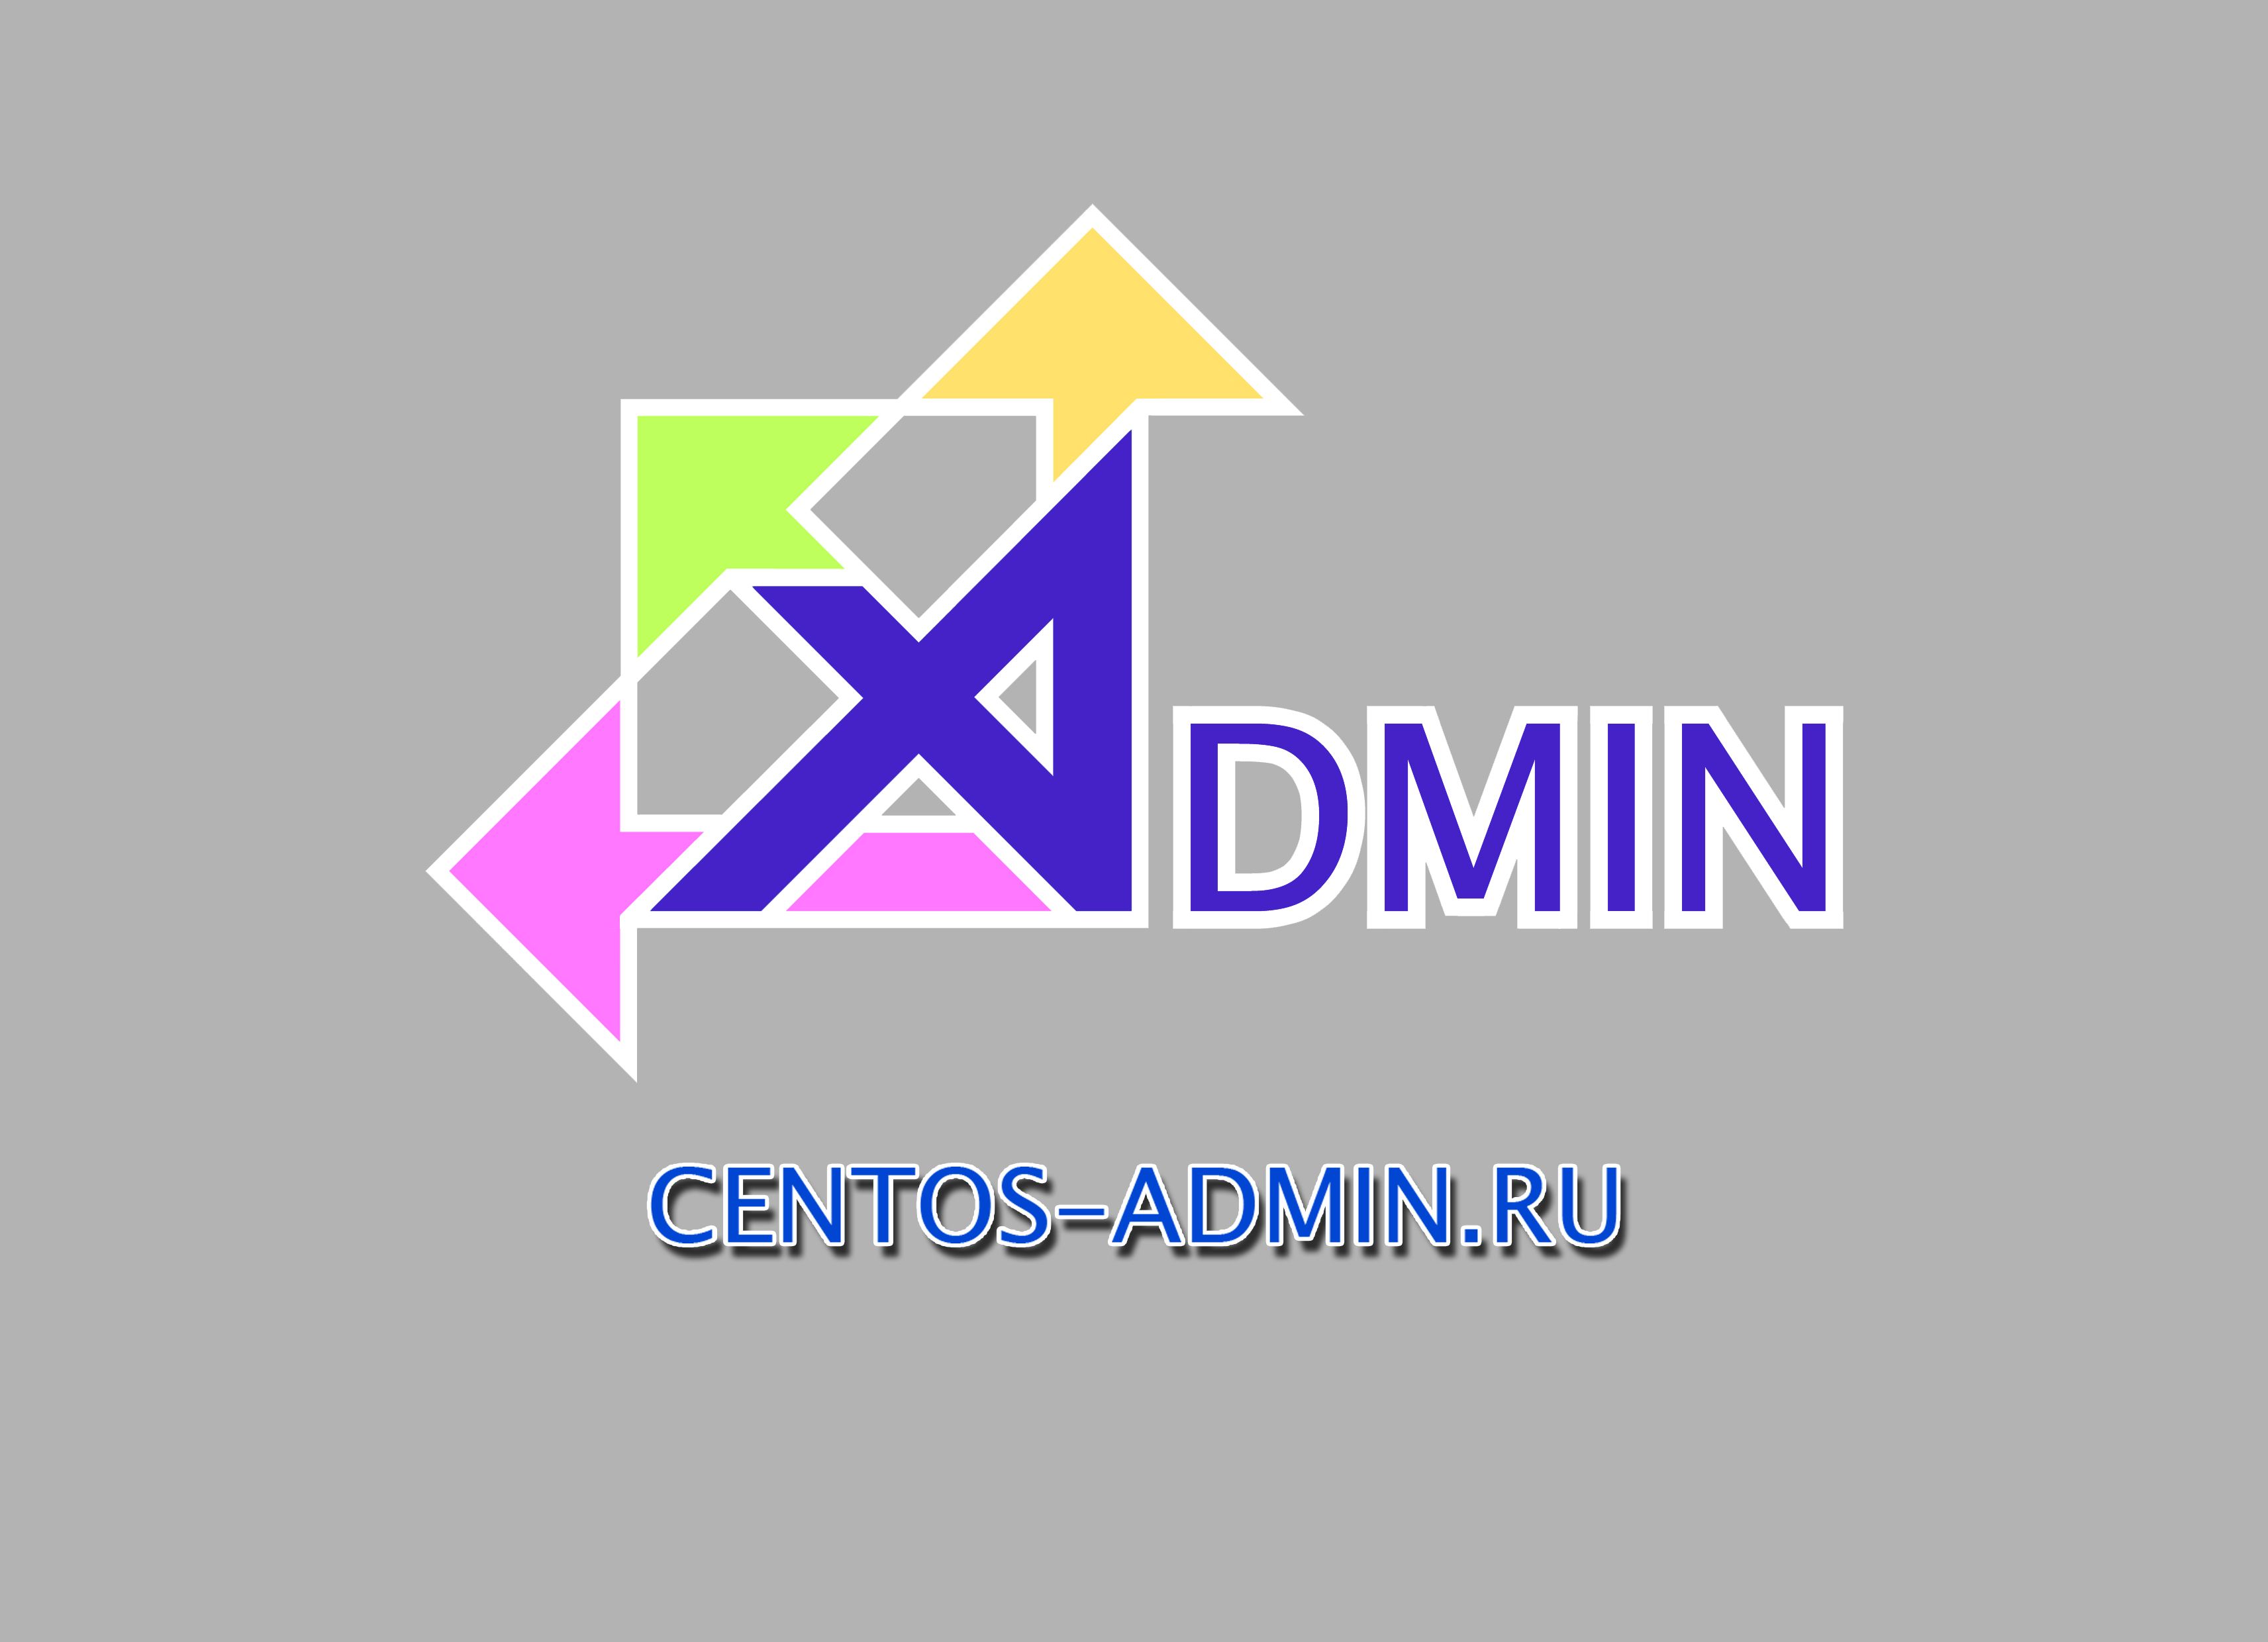 Логотип для компании Centos-admin.ru - дизайнер Ant0ni0n